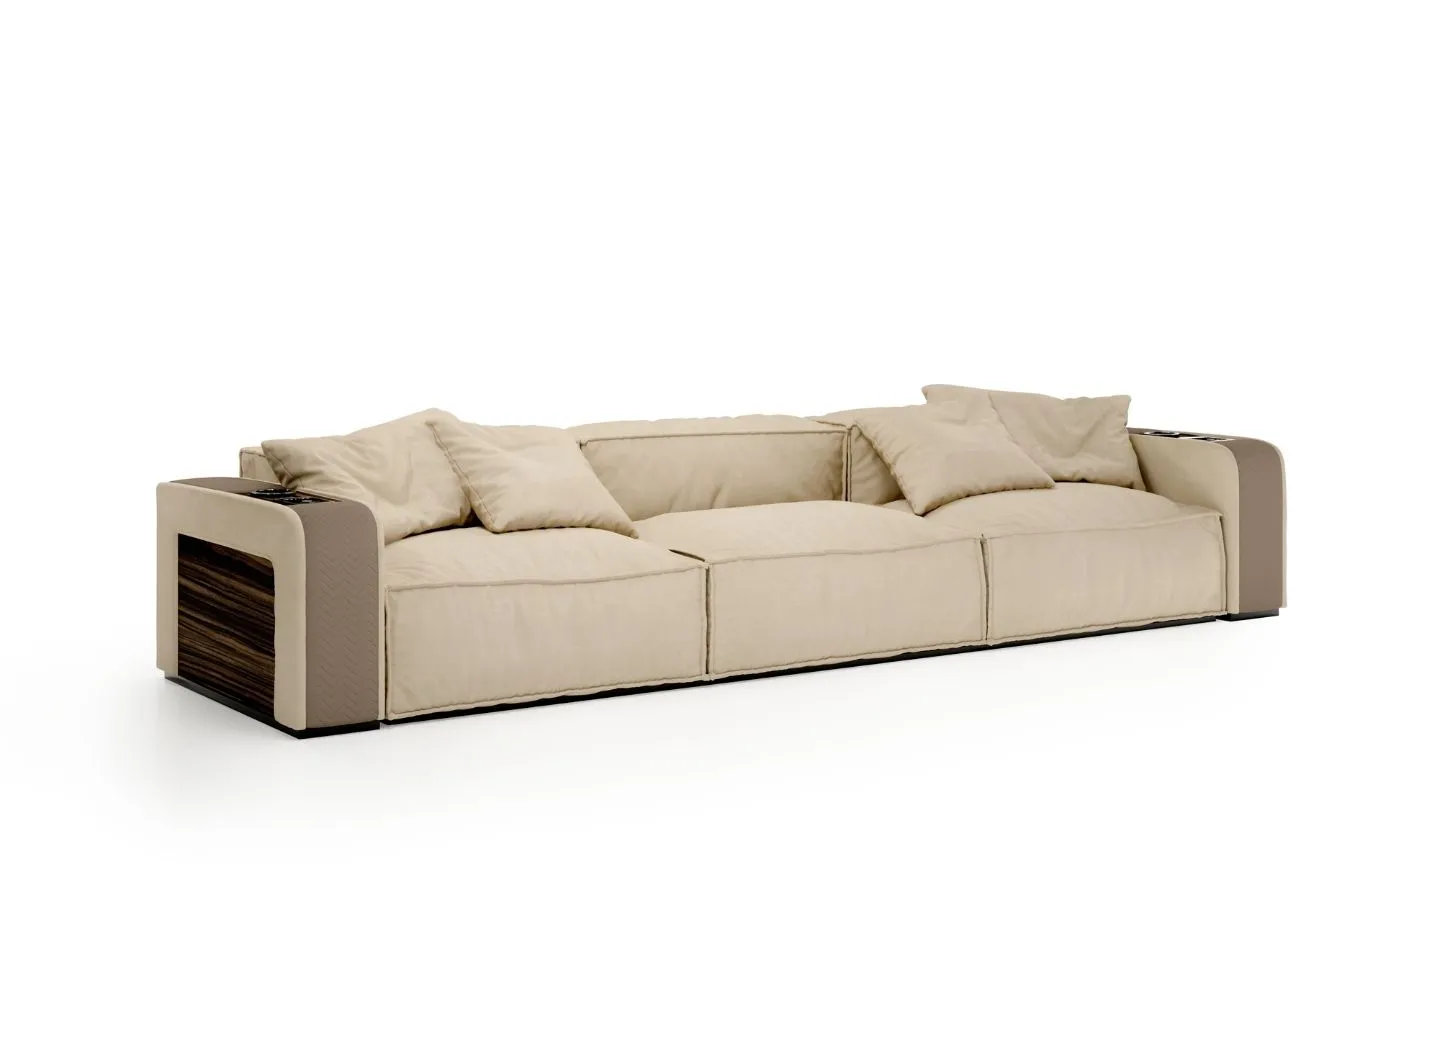 Vismara Design - Onassis Modern modular sofa